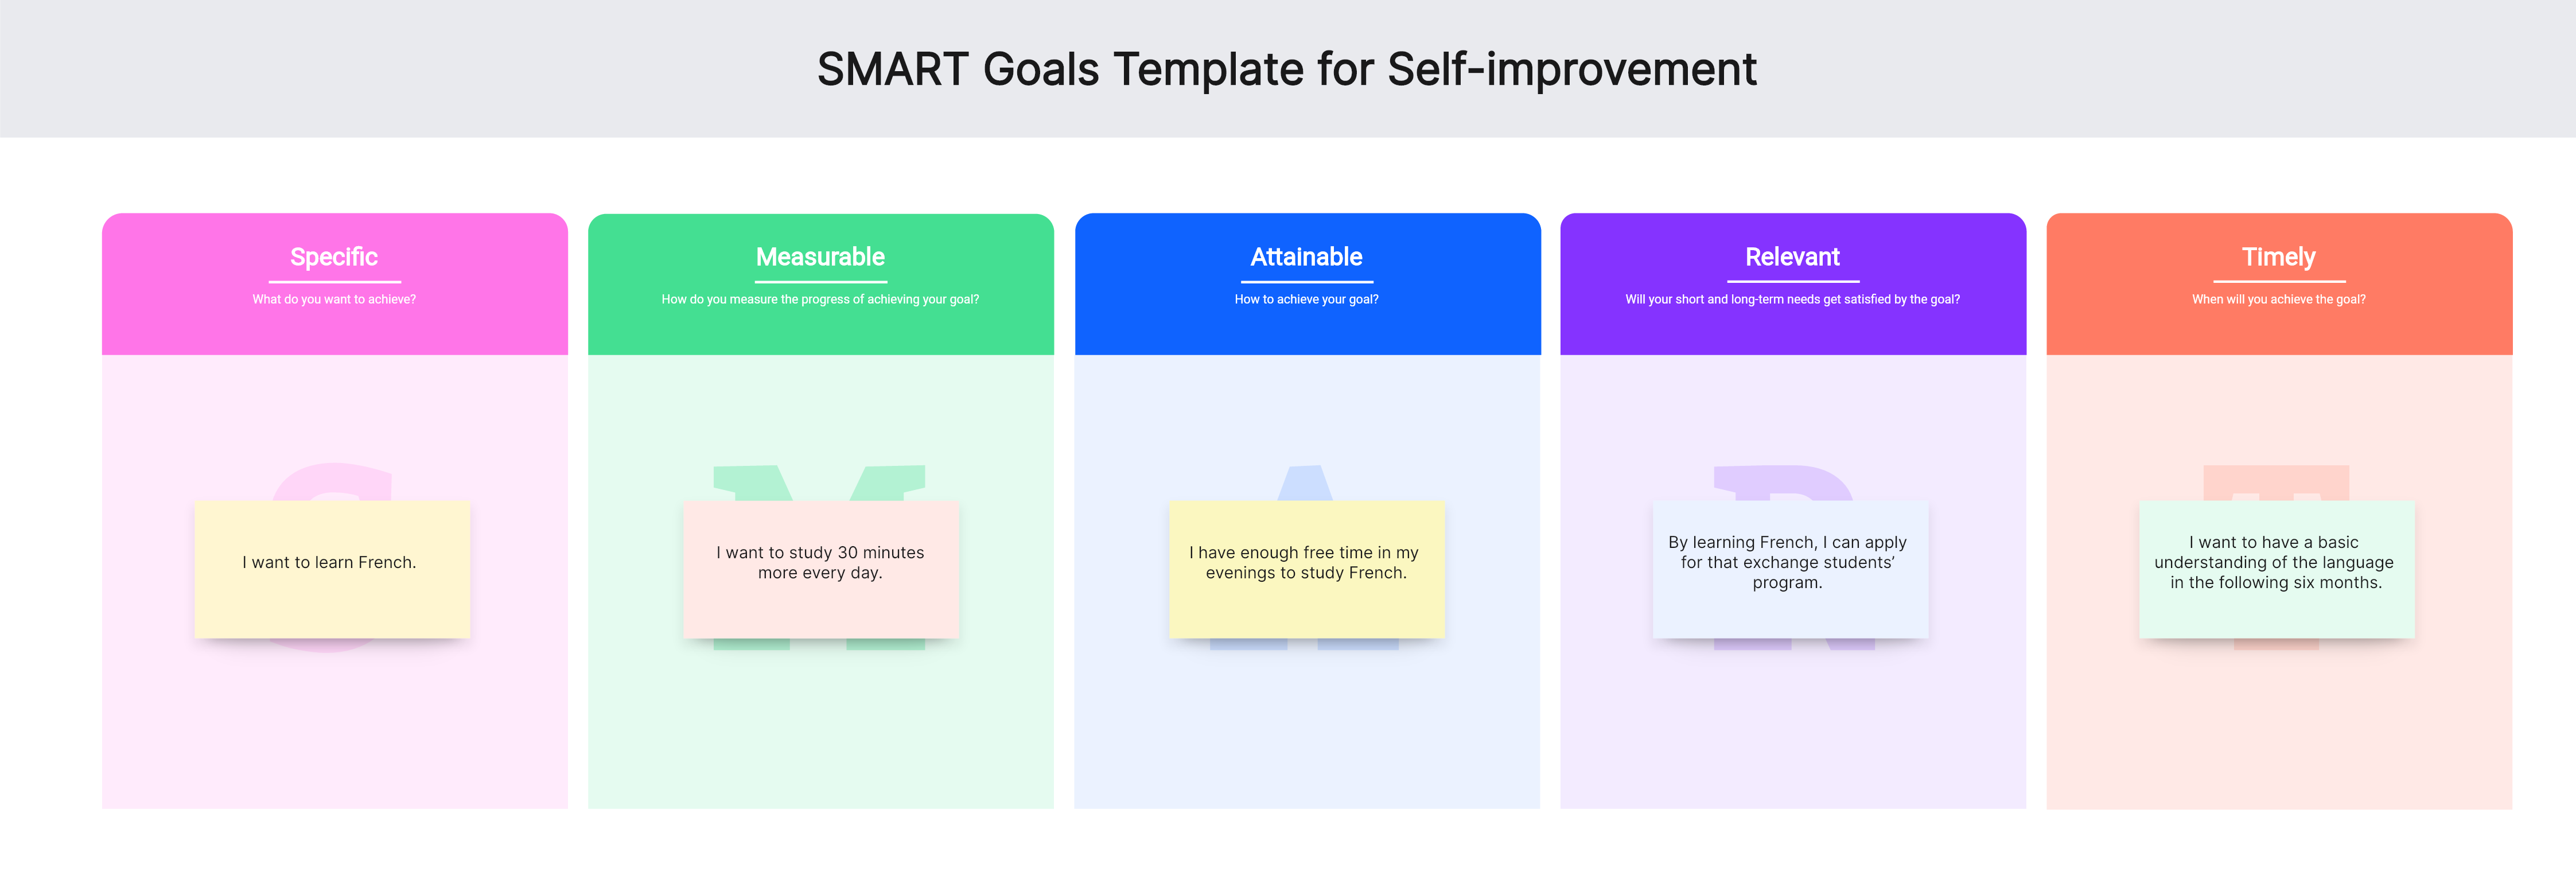 smart goals template self-improvement